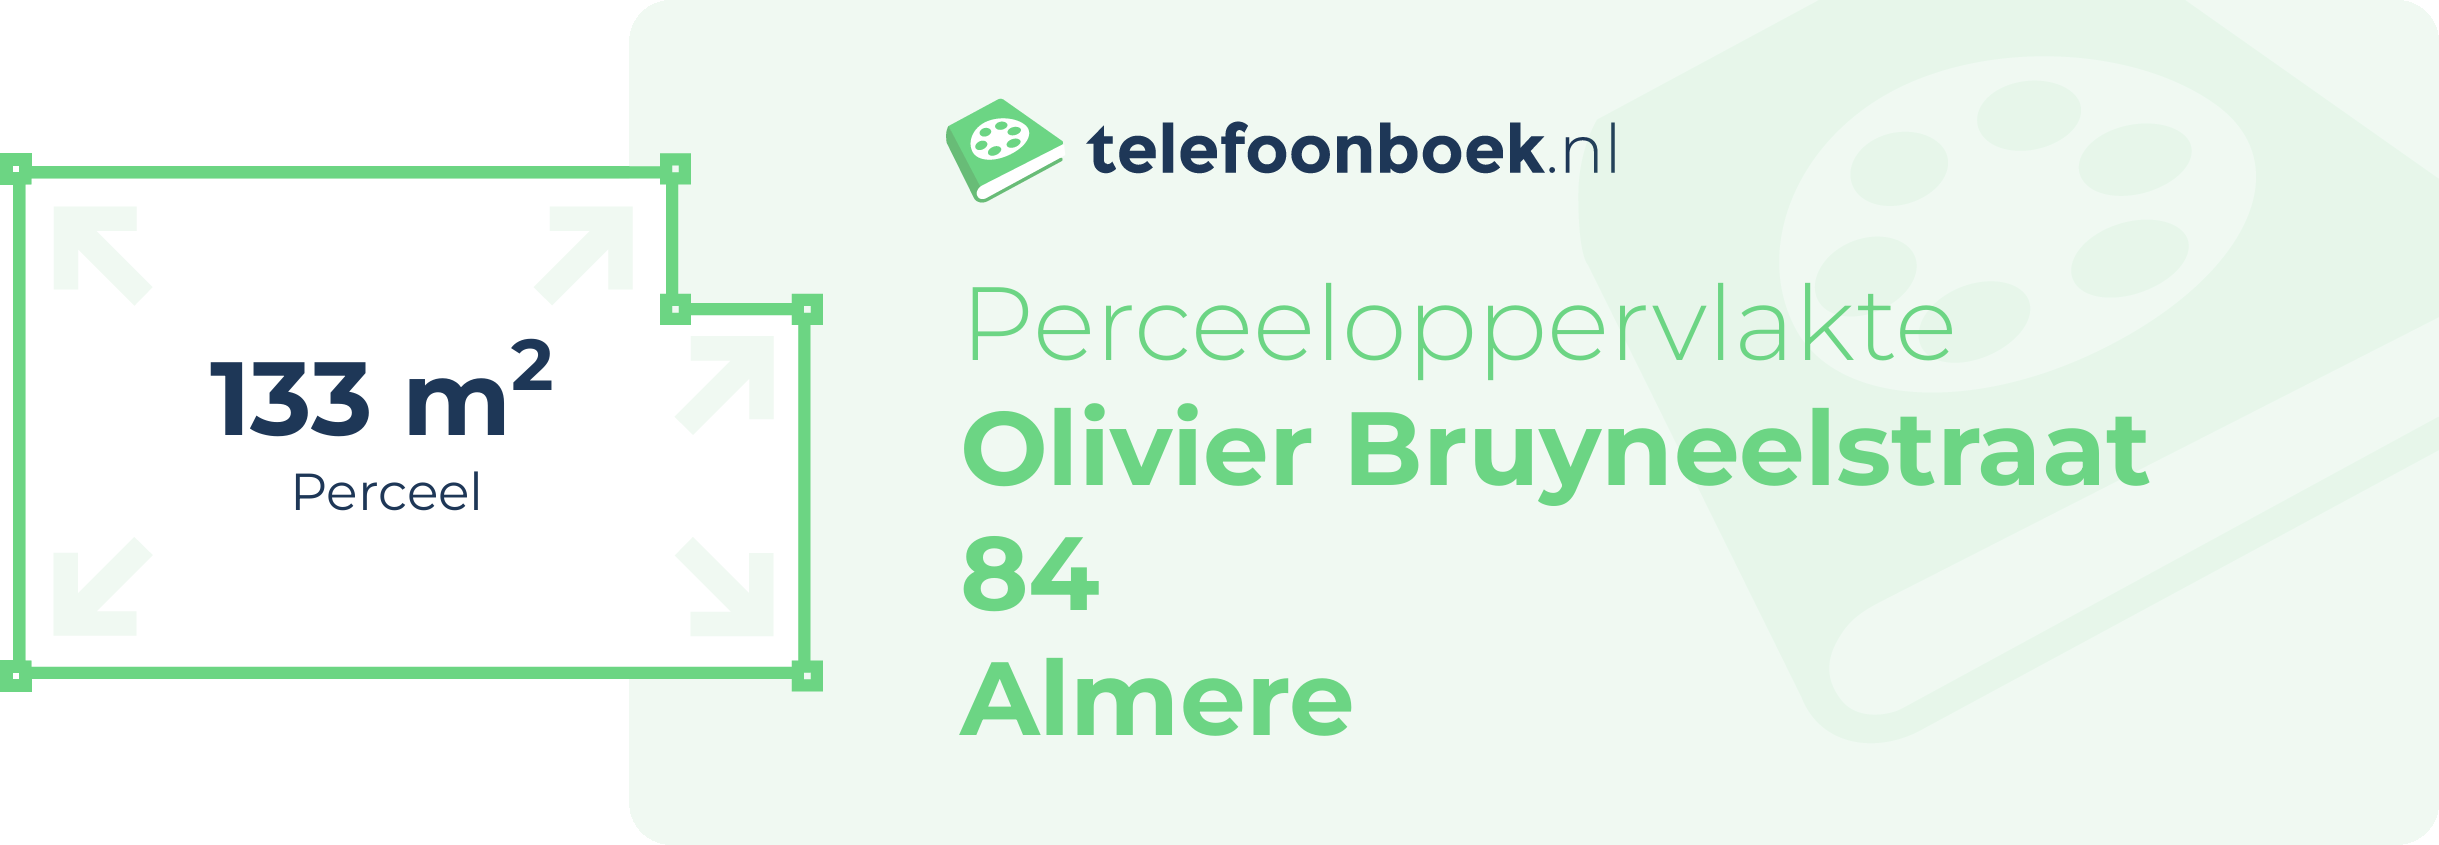 Perceeloppervlakte Olivier Bruyneelstraat 84 Almere